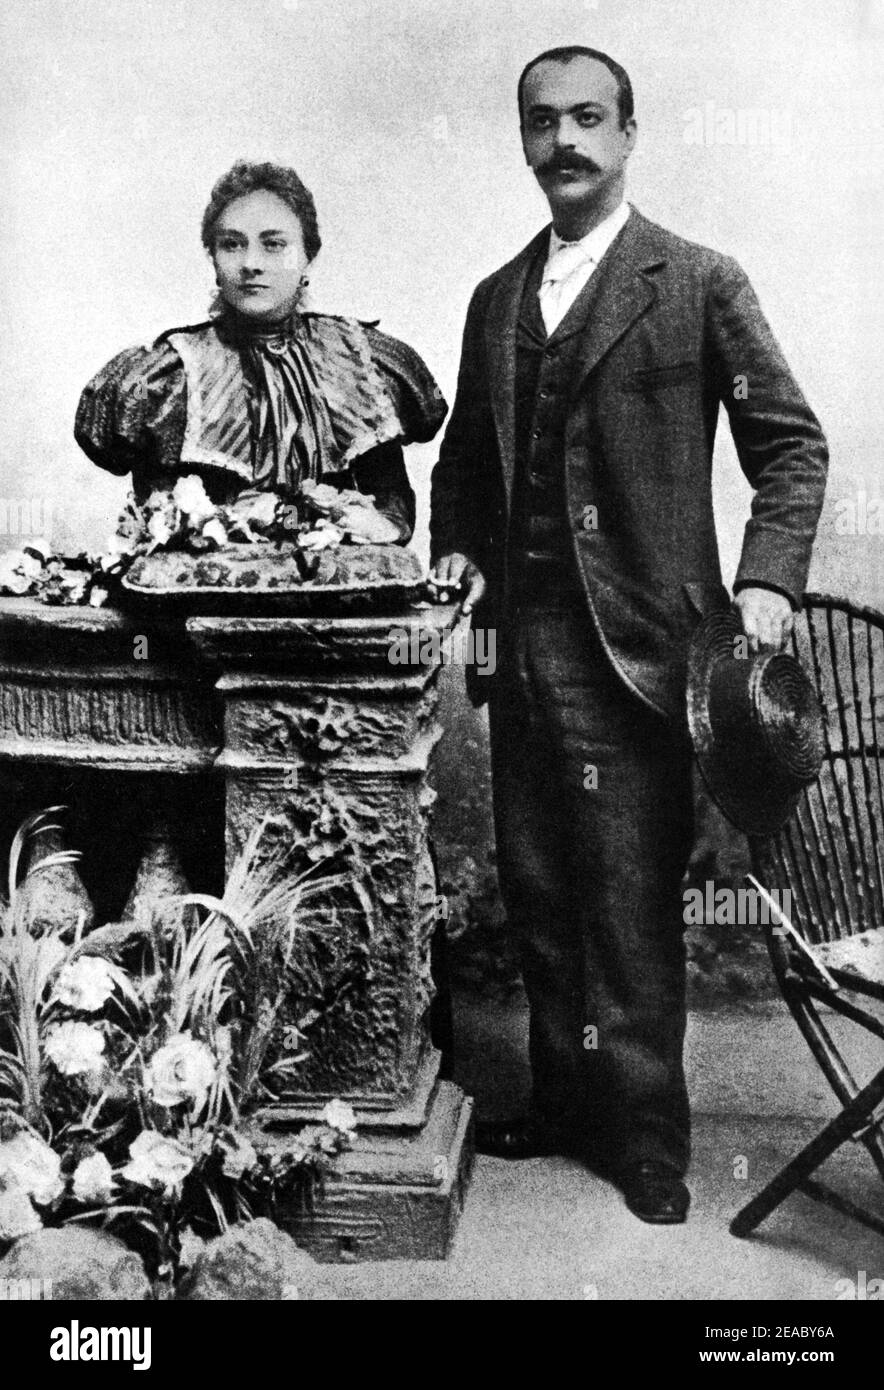 1897 , ITALY : The italian writer  ITALO SVEVO ( born Ettore Schmitz - 1861 - 1928 ) with his wife - LETTERATURA - LITERATURE - SCRITTORE - LETTERATO - marito e moglie - portrait - ritratto - baffi - moustache - cappello - hat - paglietta - collar - colletto  ----  Archivio GBB Stock Photo